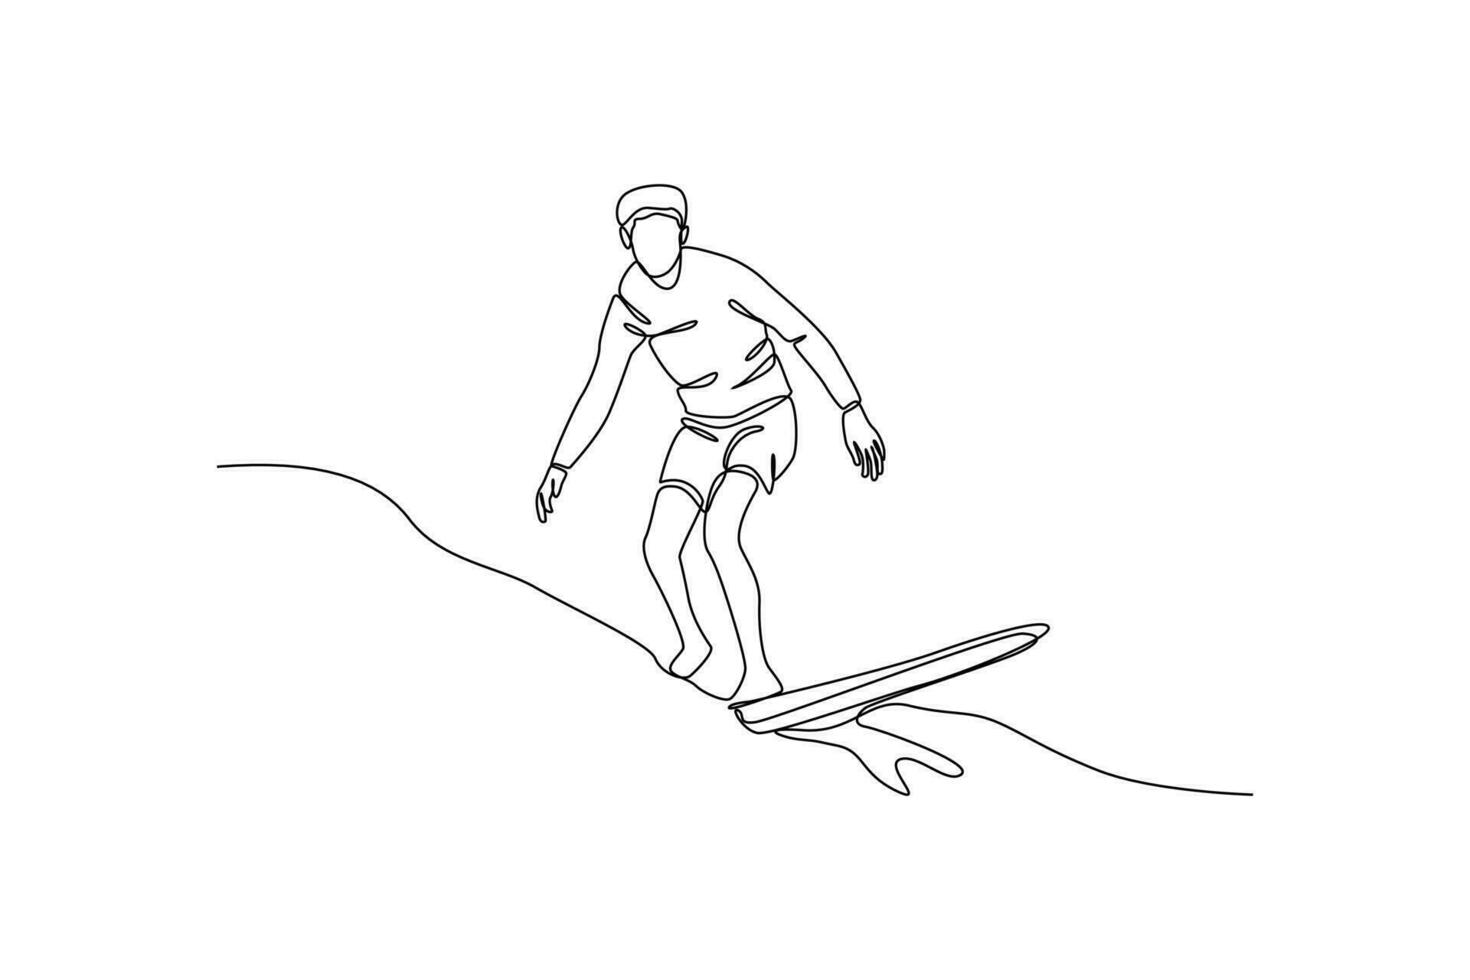 soltero uno línea dibujo contento chico jugando navegar en el playa en verano día festivo. verano playa concepto. continuo línea dibujar diseño gráfico vector ilustración.